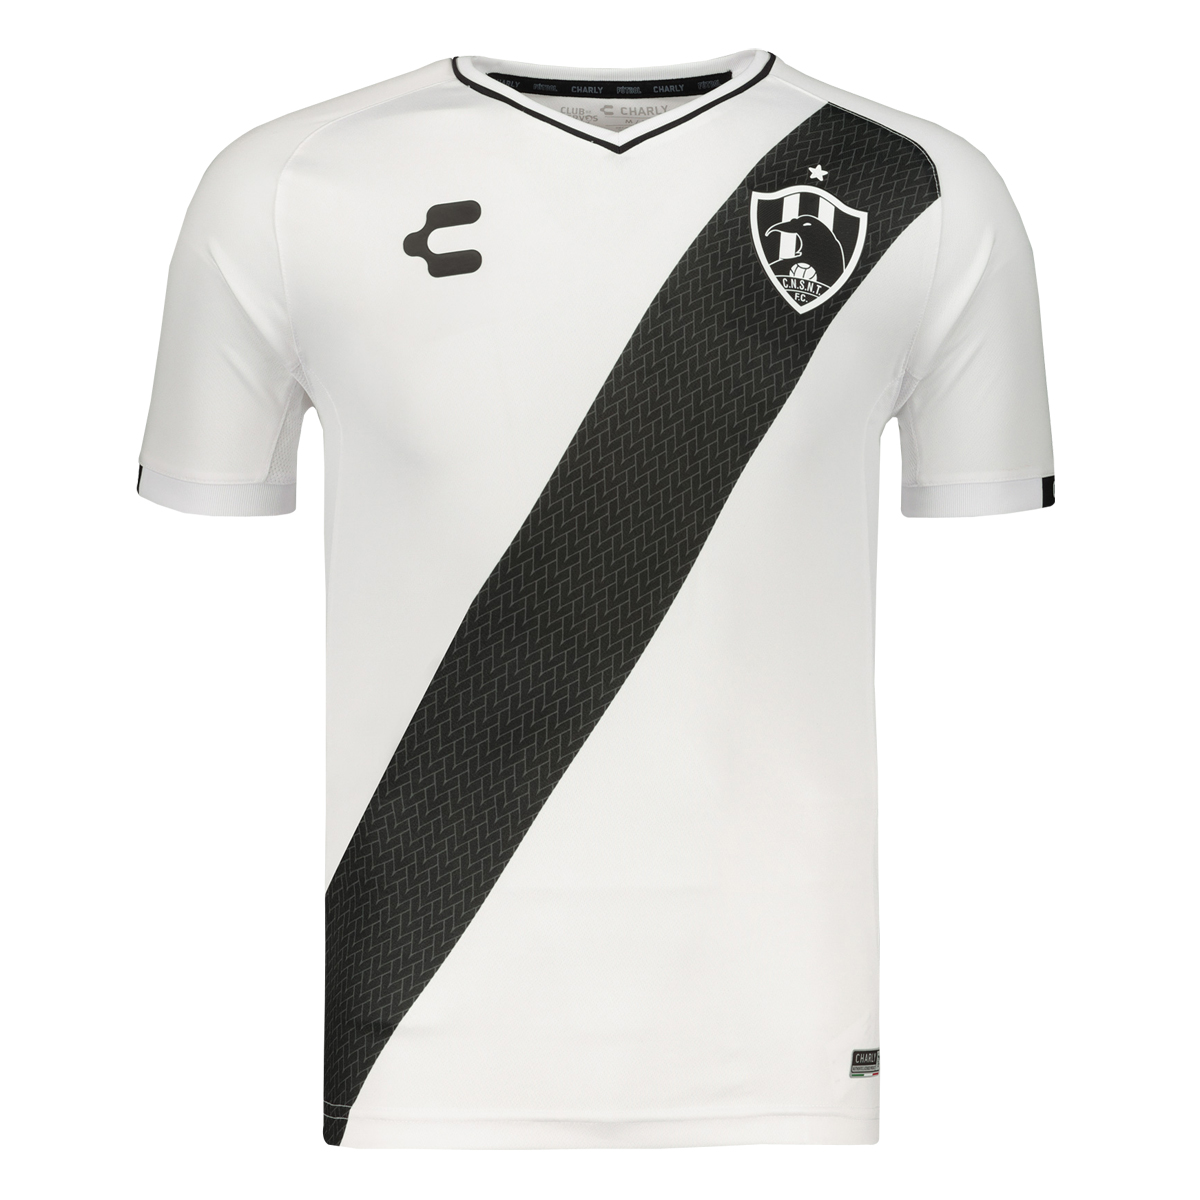 Club De Cuervos Sport Gear,Club De Cuervos Soccer Uniforms,Club De Cuervos  Soccer Jerseys,Club De Cuervos Football Shirts  Sport Kits  Shop